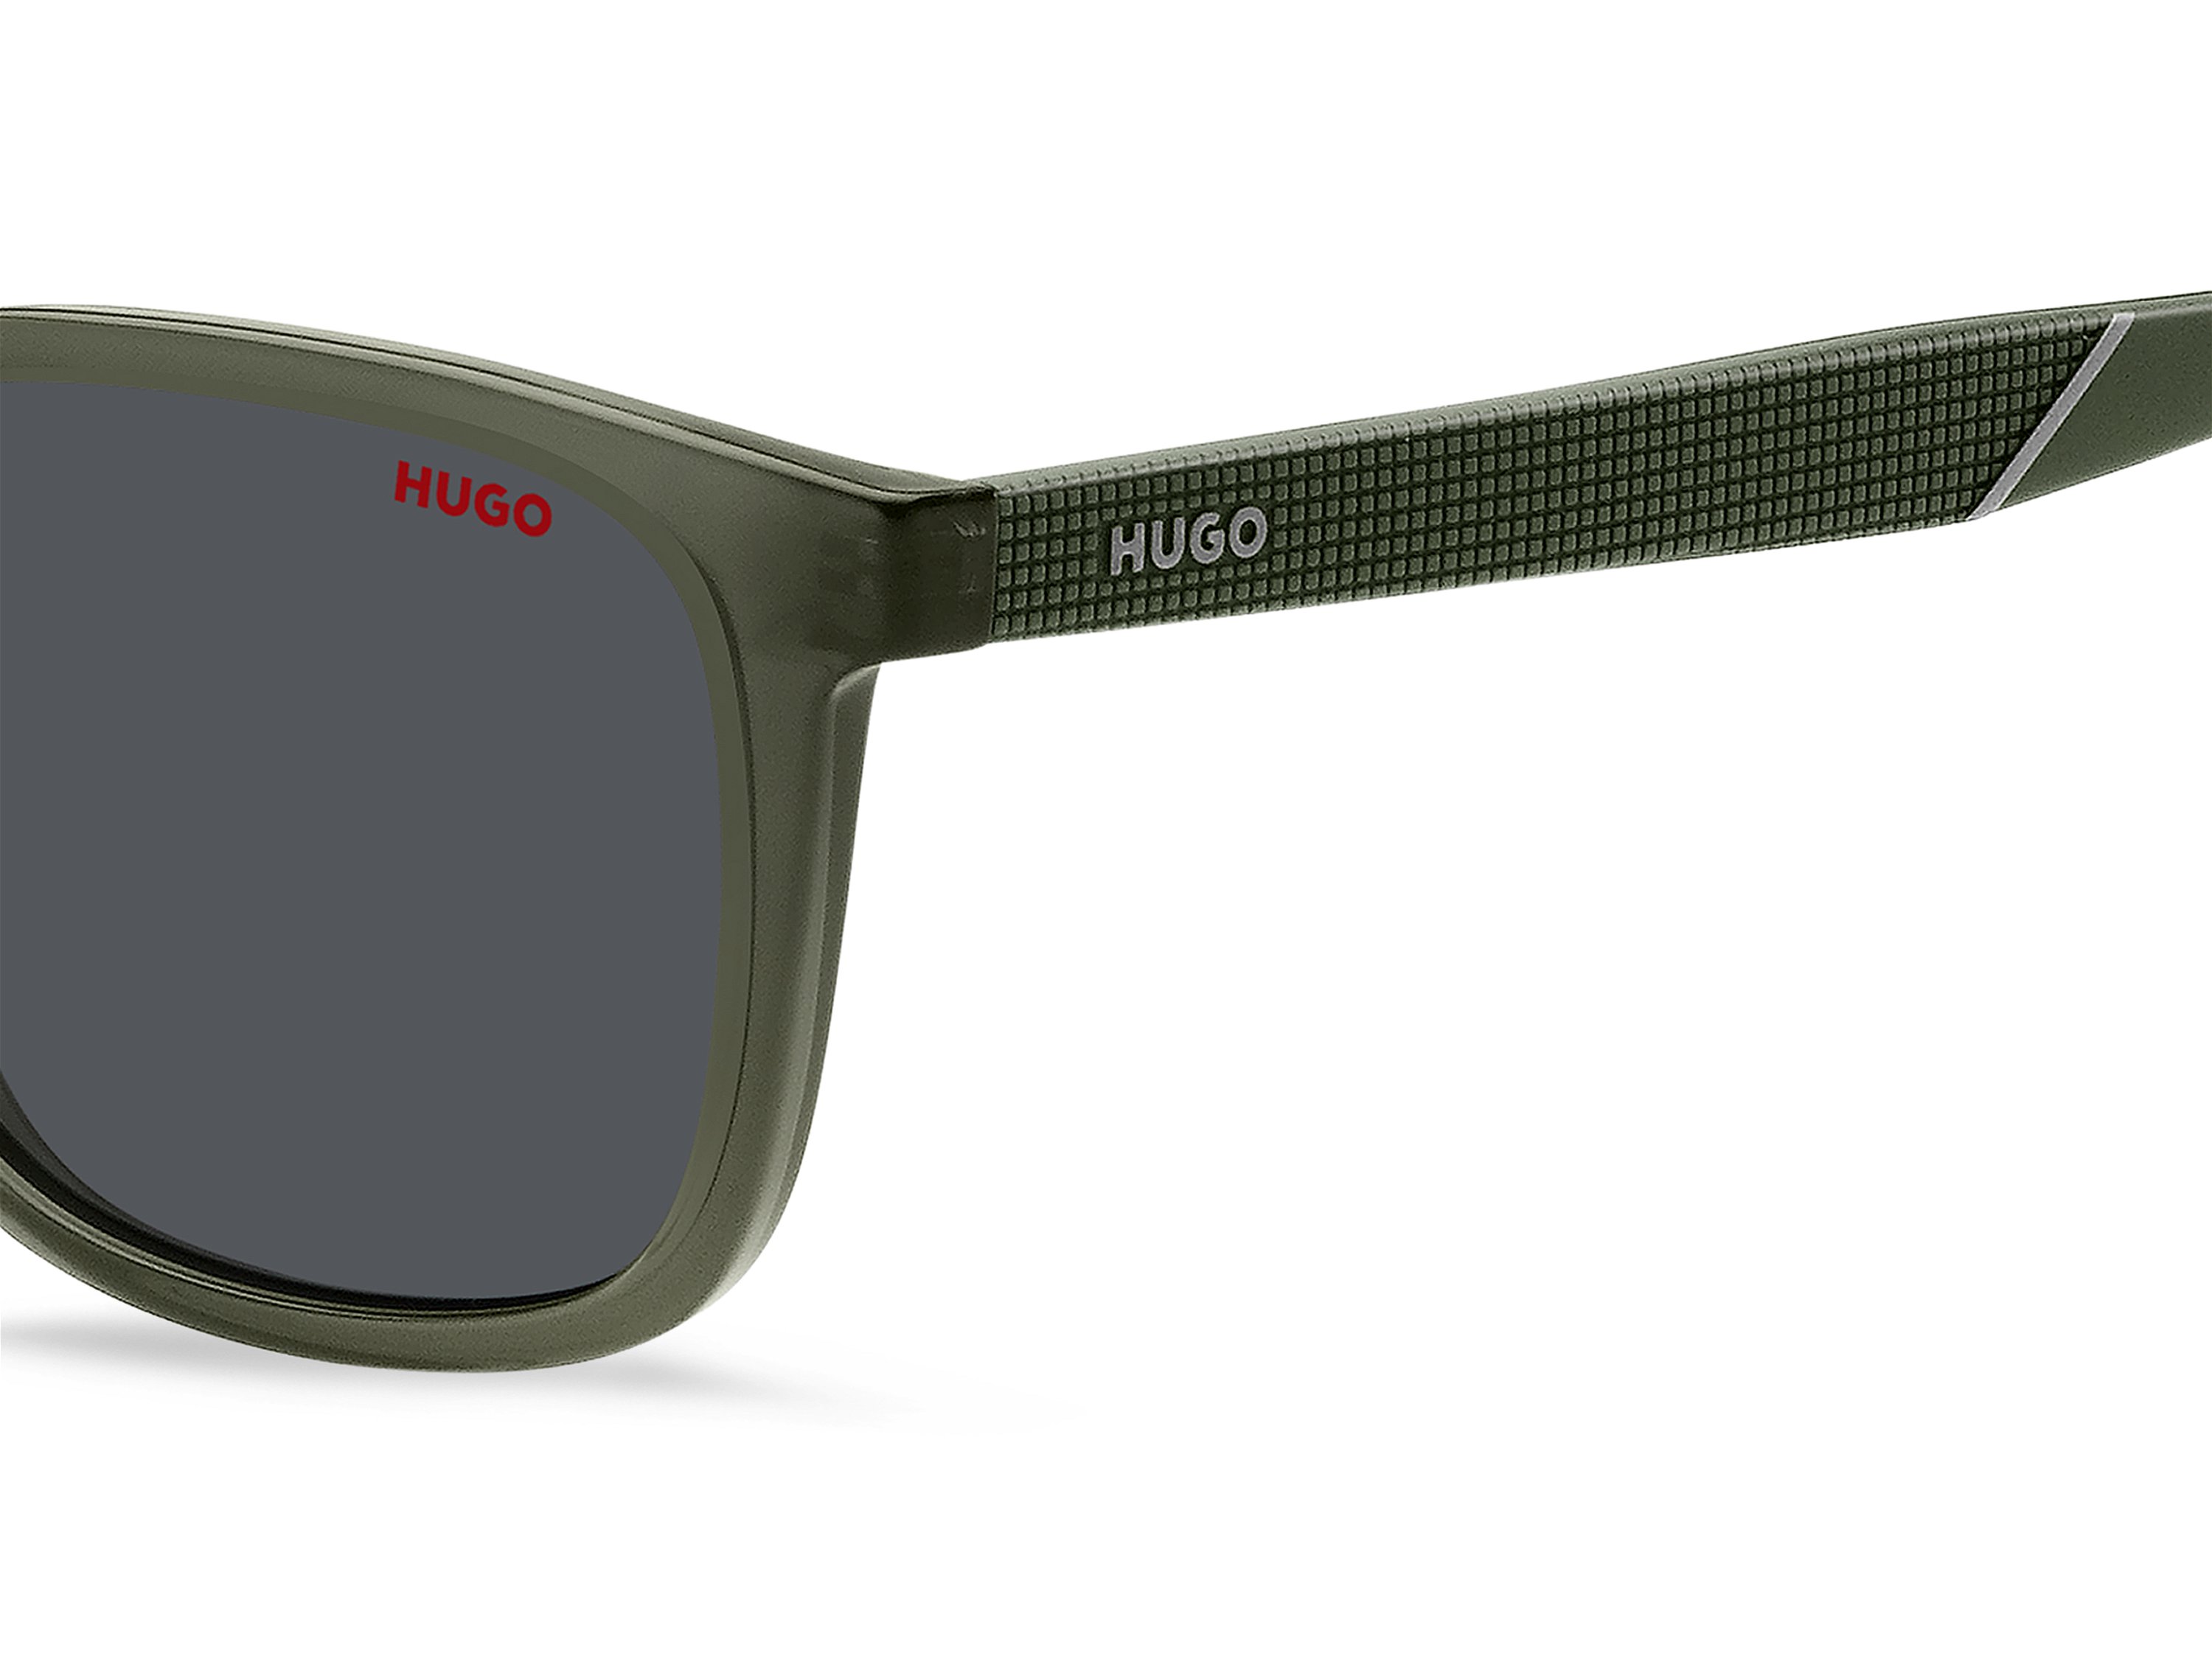 Das Bild zeigt die Sonnenbrille HG1306/S 1ED von der Marke Hugo in grün.